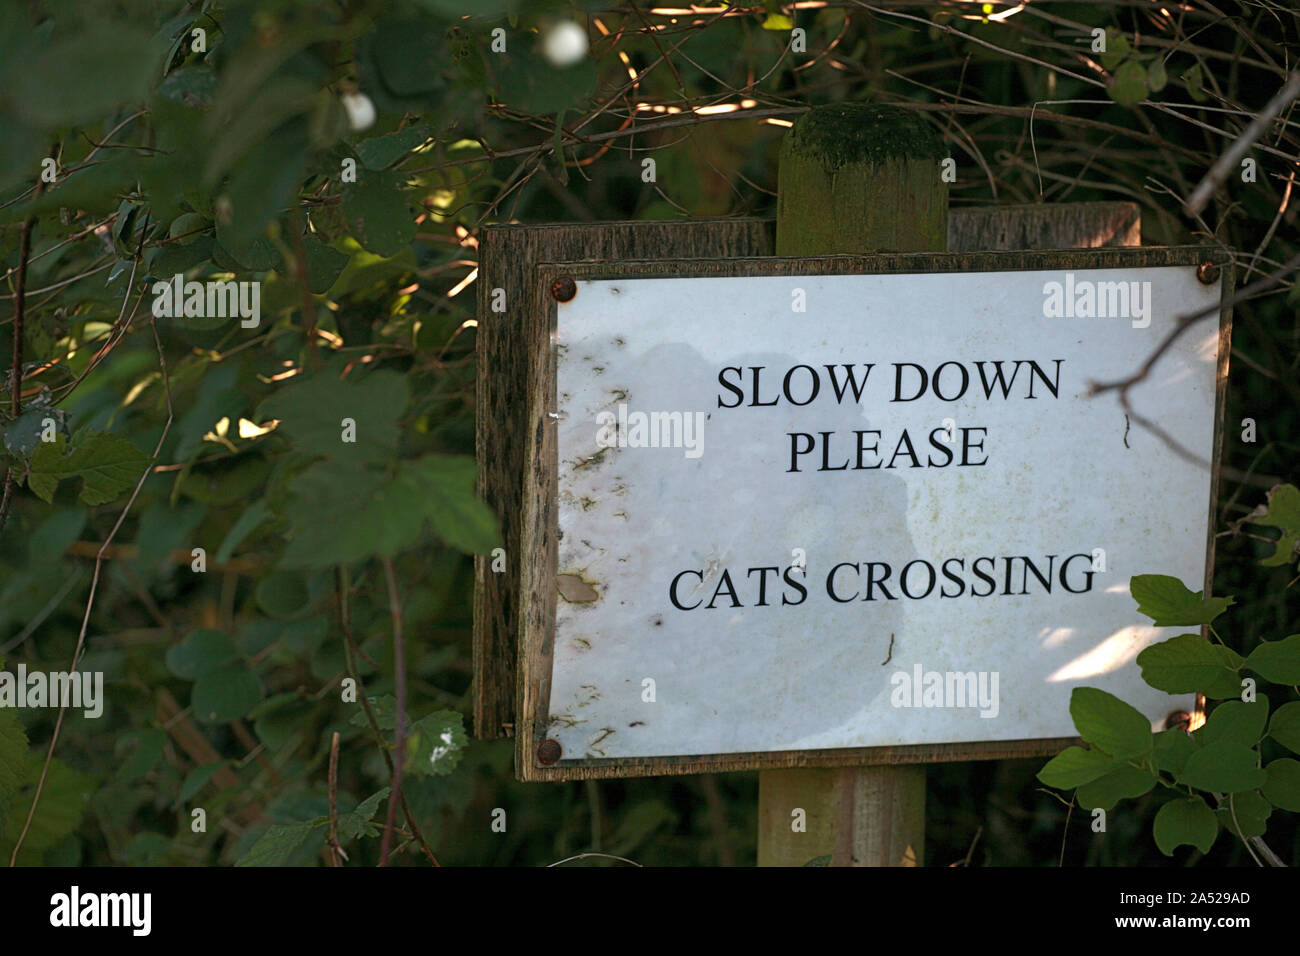 Segno stravagante 'Sgiù verso il basso si prega, gatti crossing', Huckers Lane, Selborne, Hampshire, Regno Unito Foto Stock